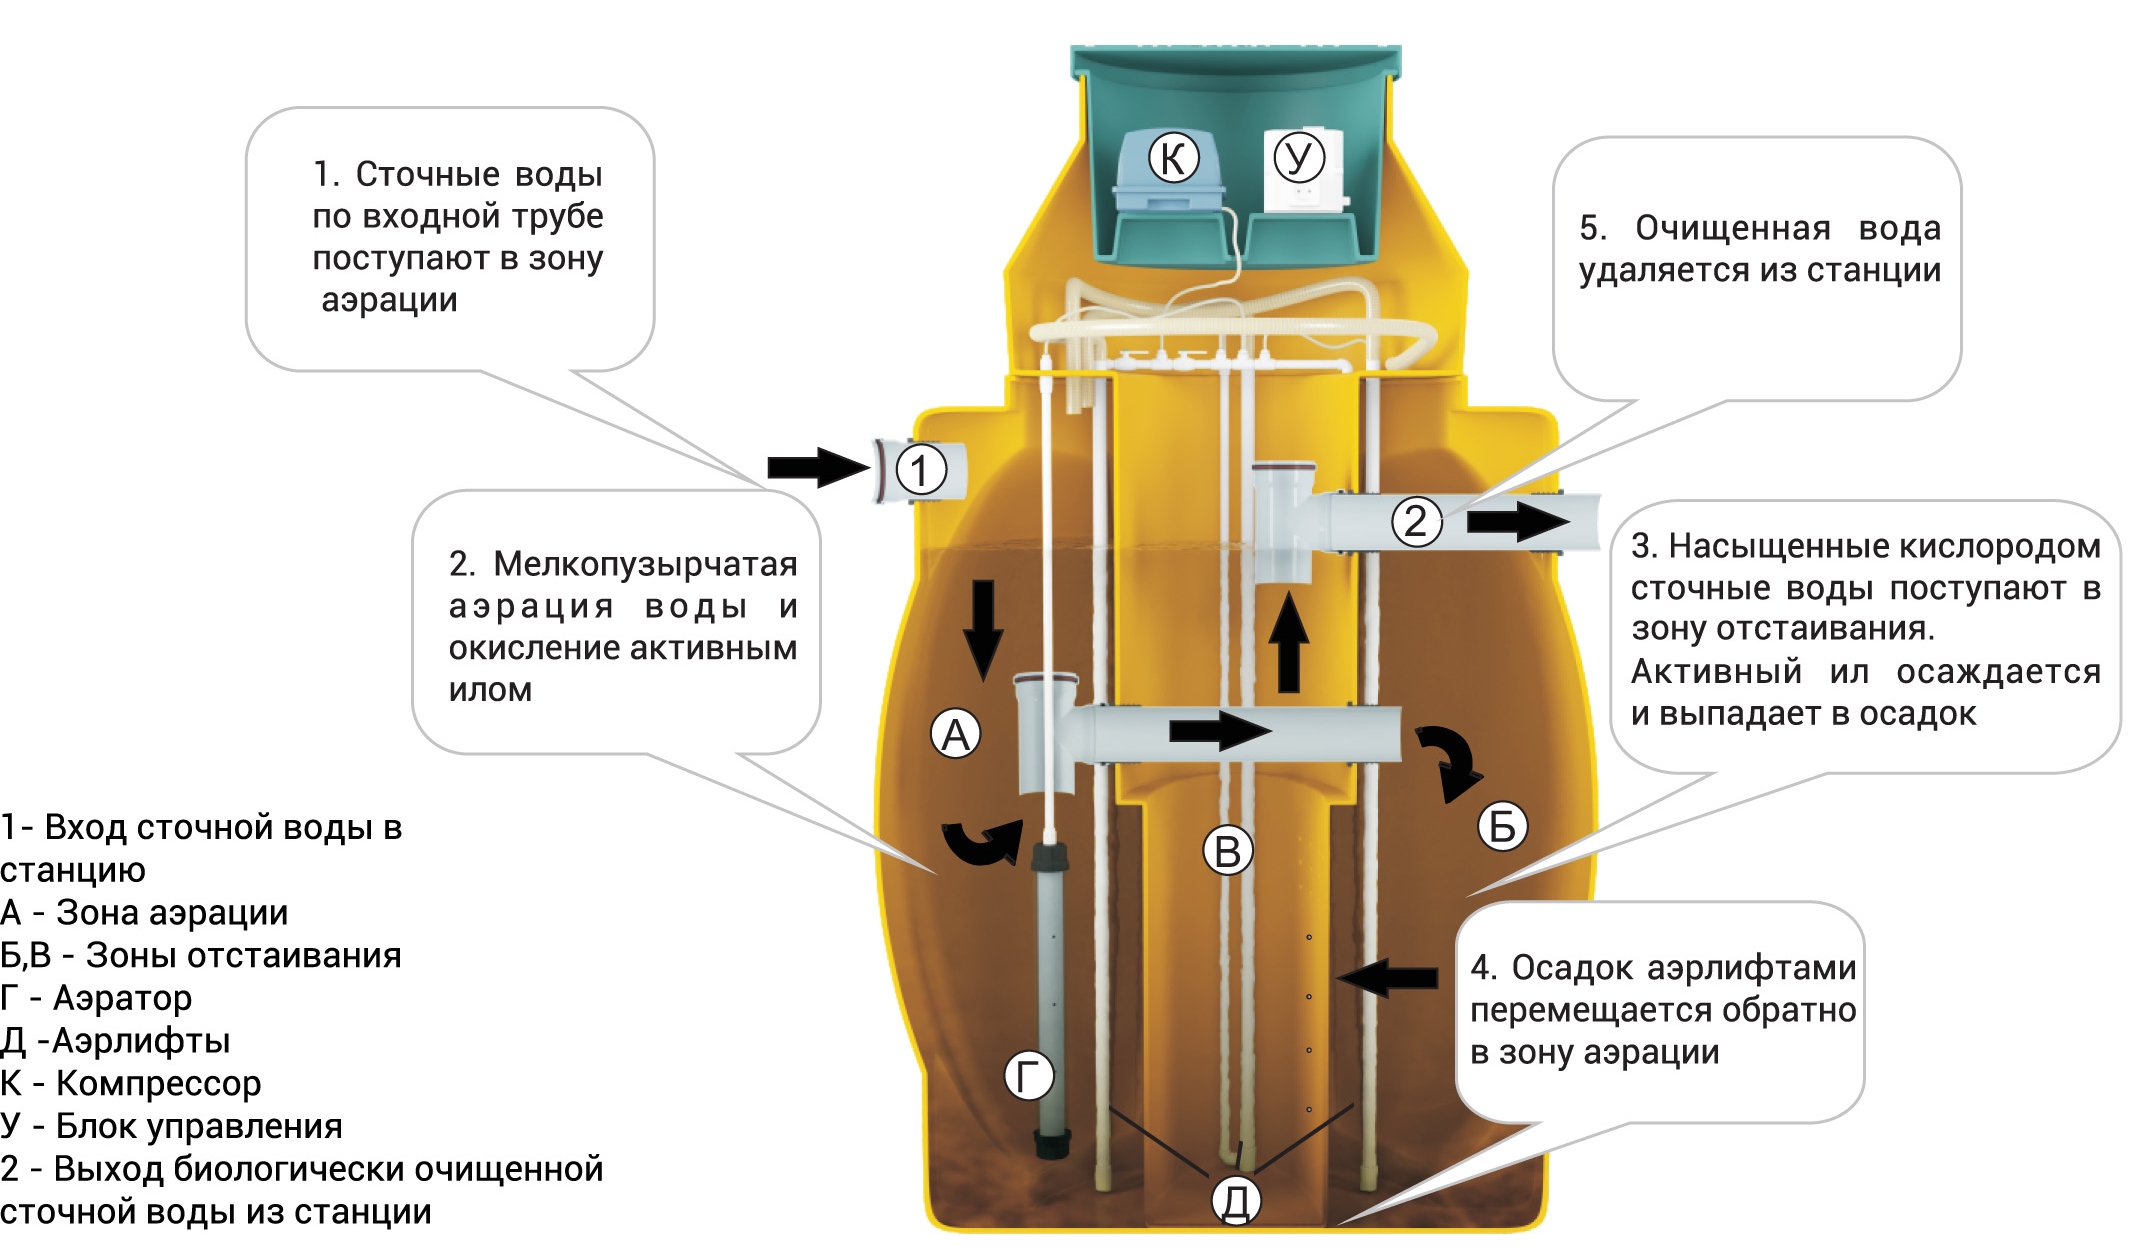 Септик - основной элемент автономной канализации для дачи и дома